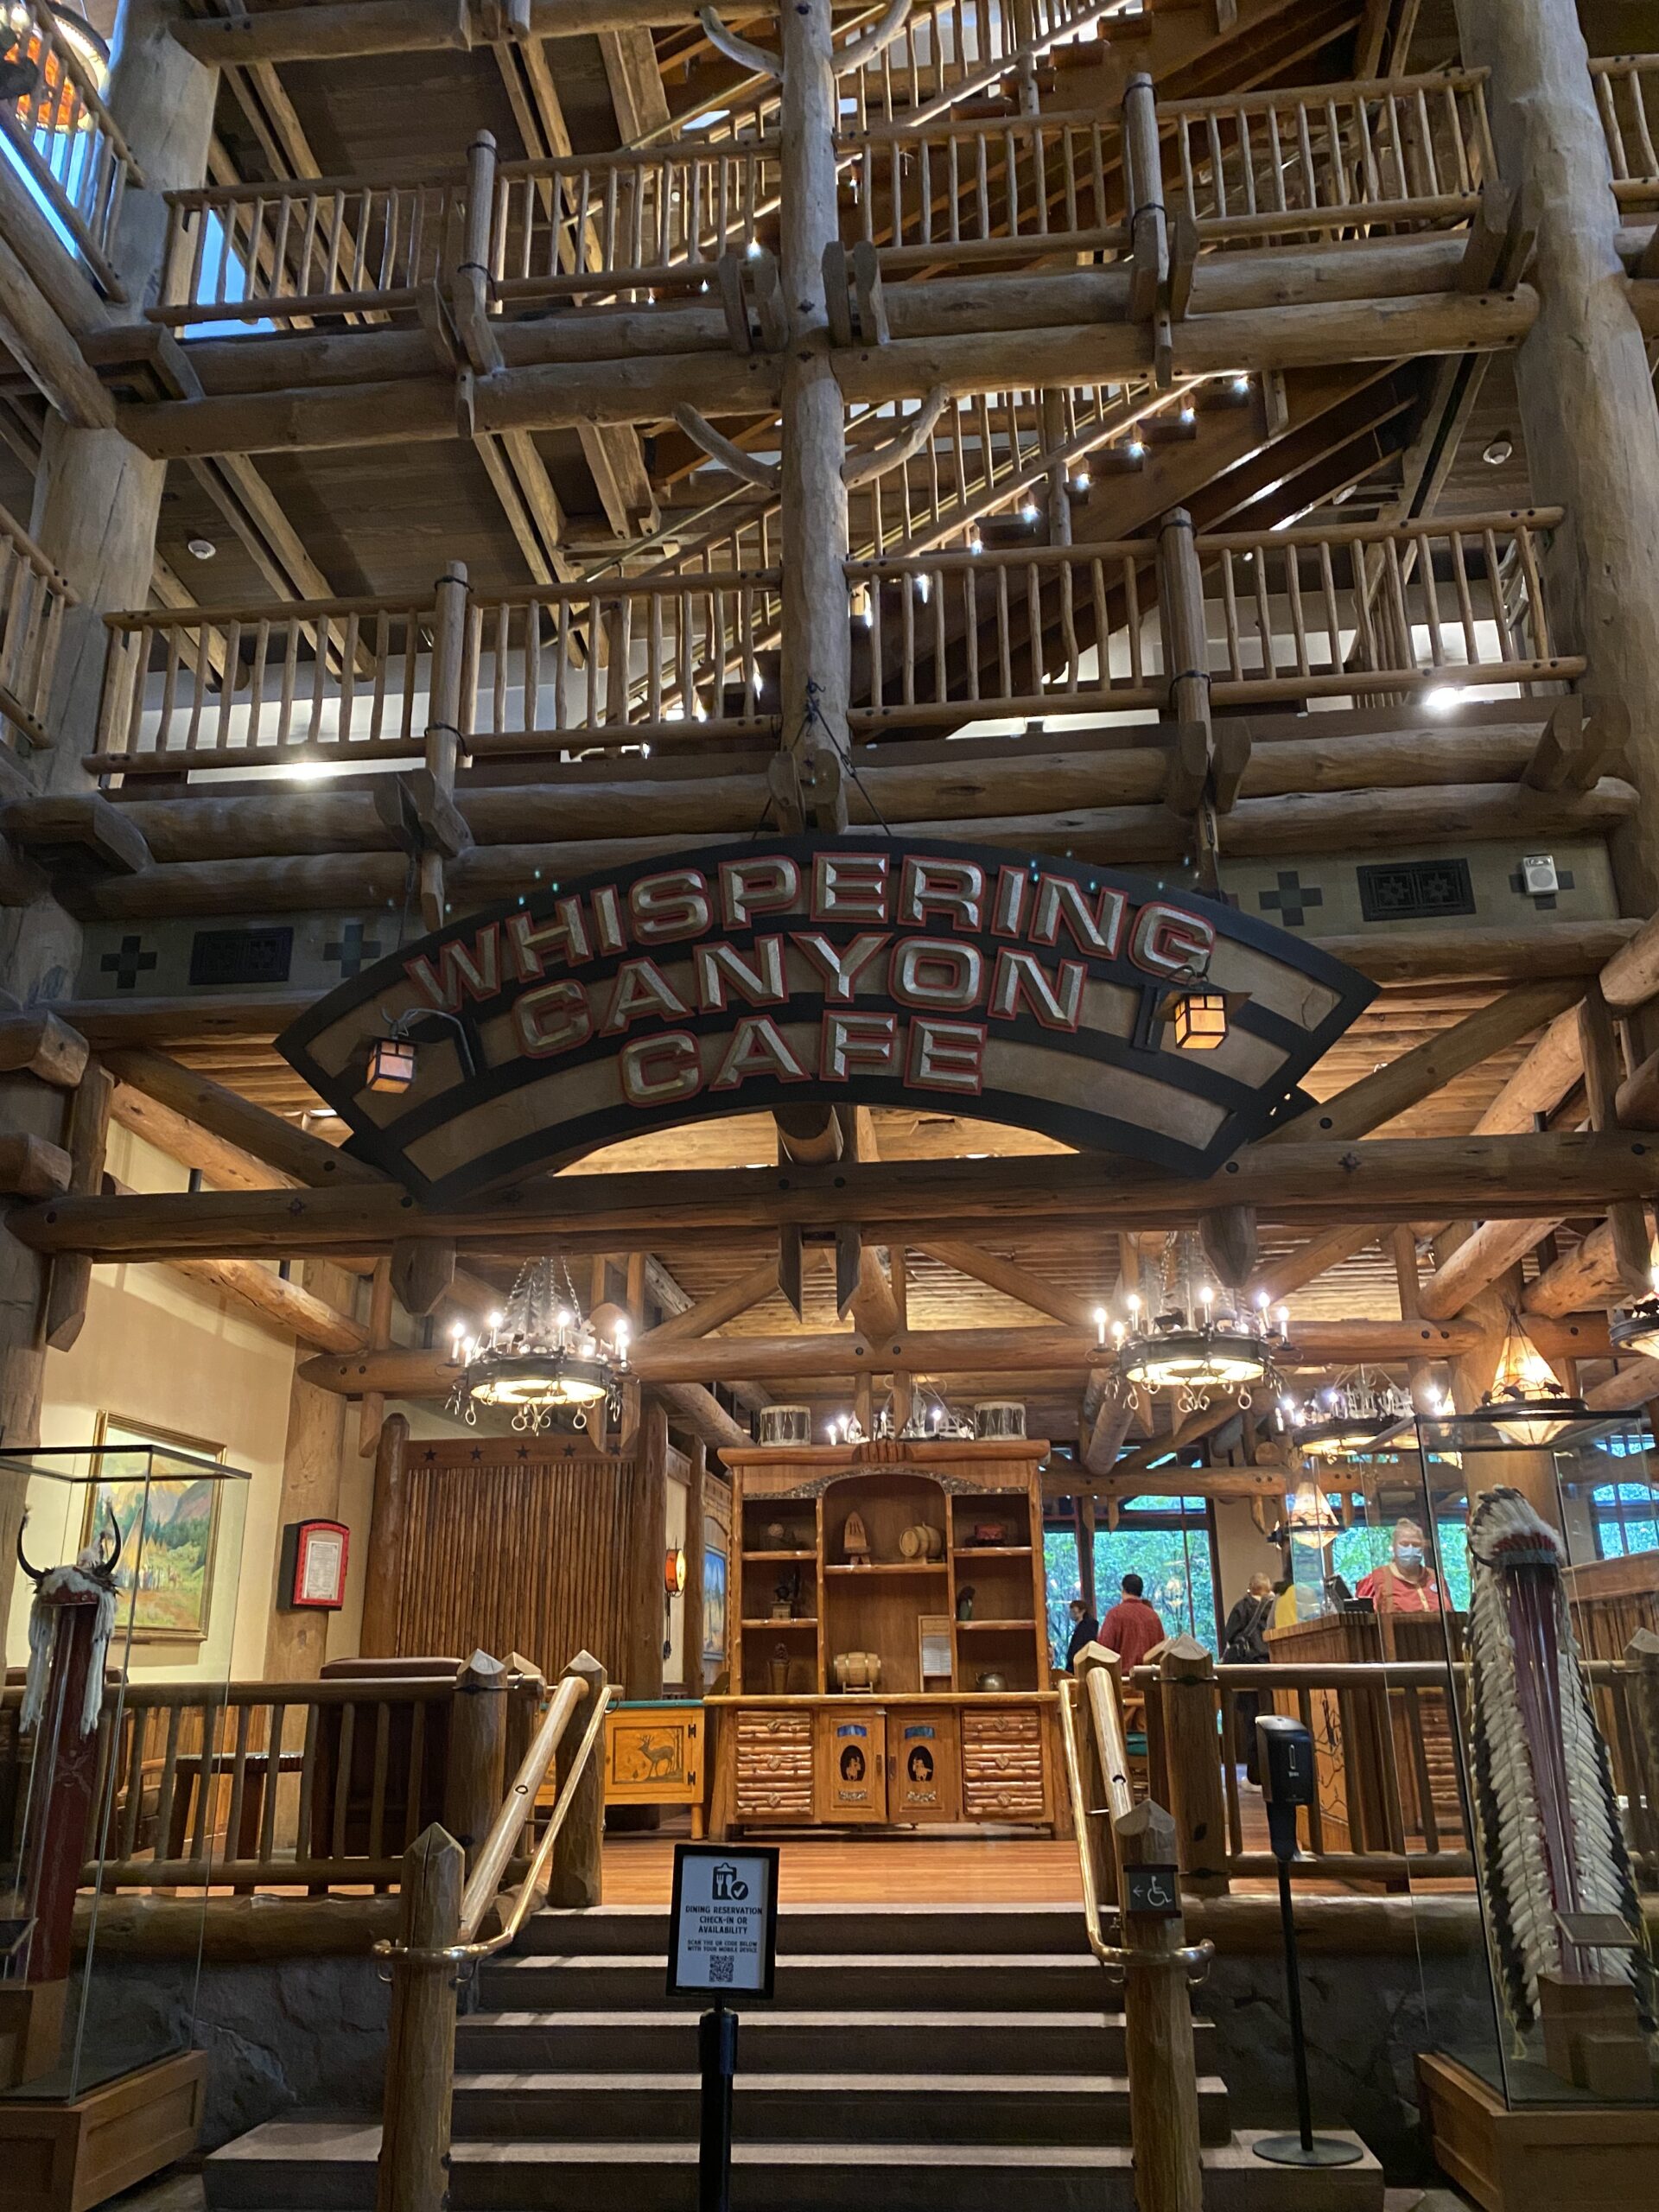 Disney's Whispering Canyon Cafe